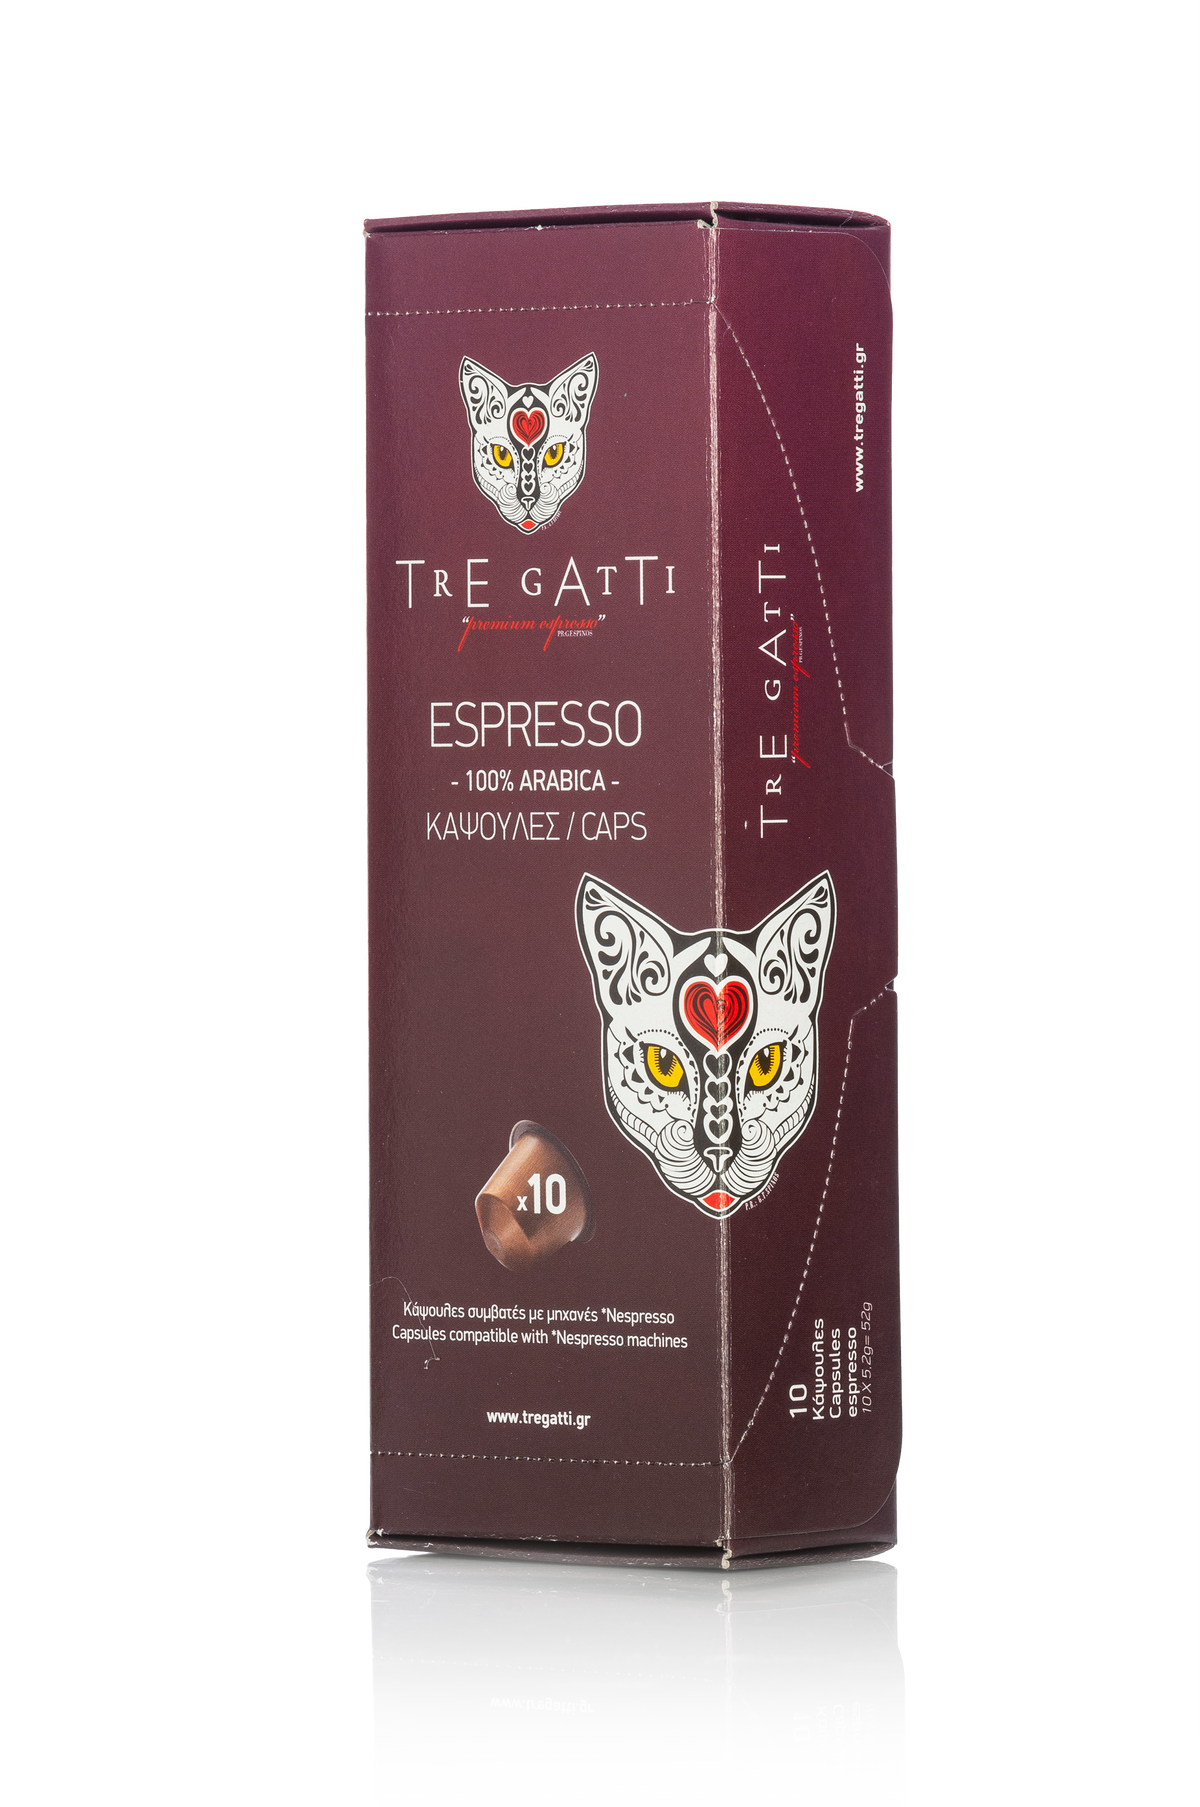 Front of box of Tre Gatti espresso capsules